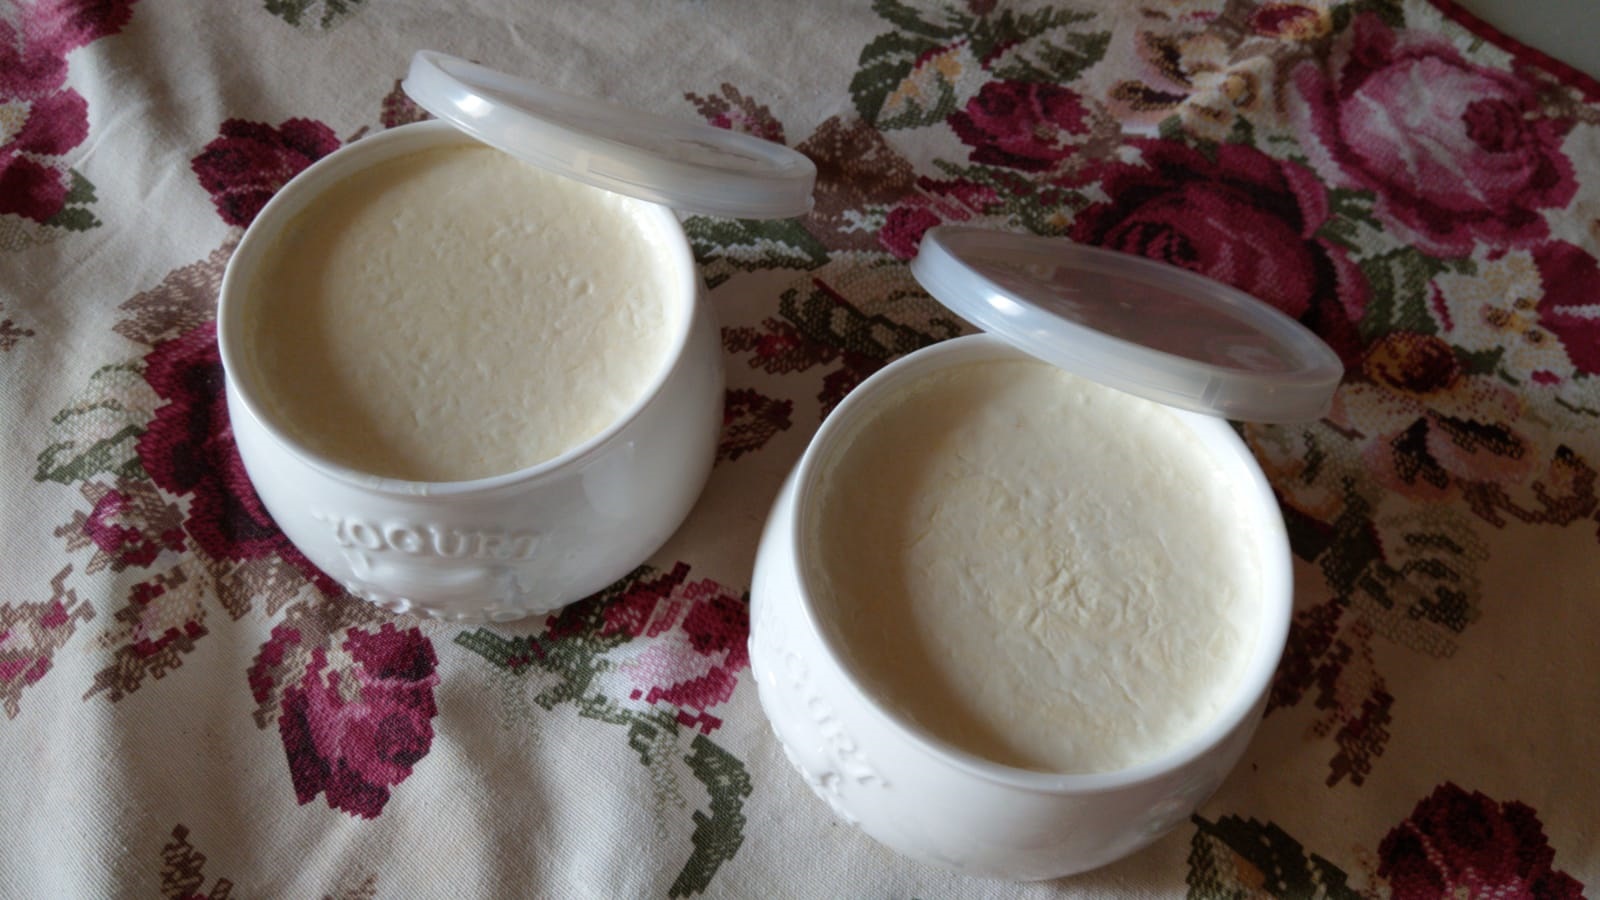 Fırında, susuz, taş gibi ev yapımı yoğurt yapmak artık çok kolay! Fırında yoğurt tarifi